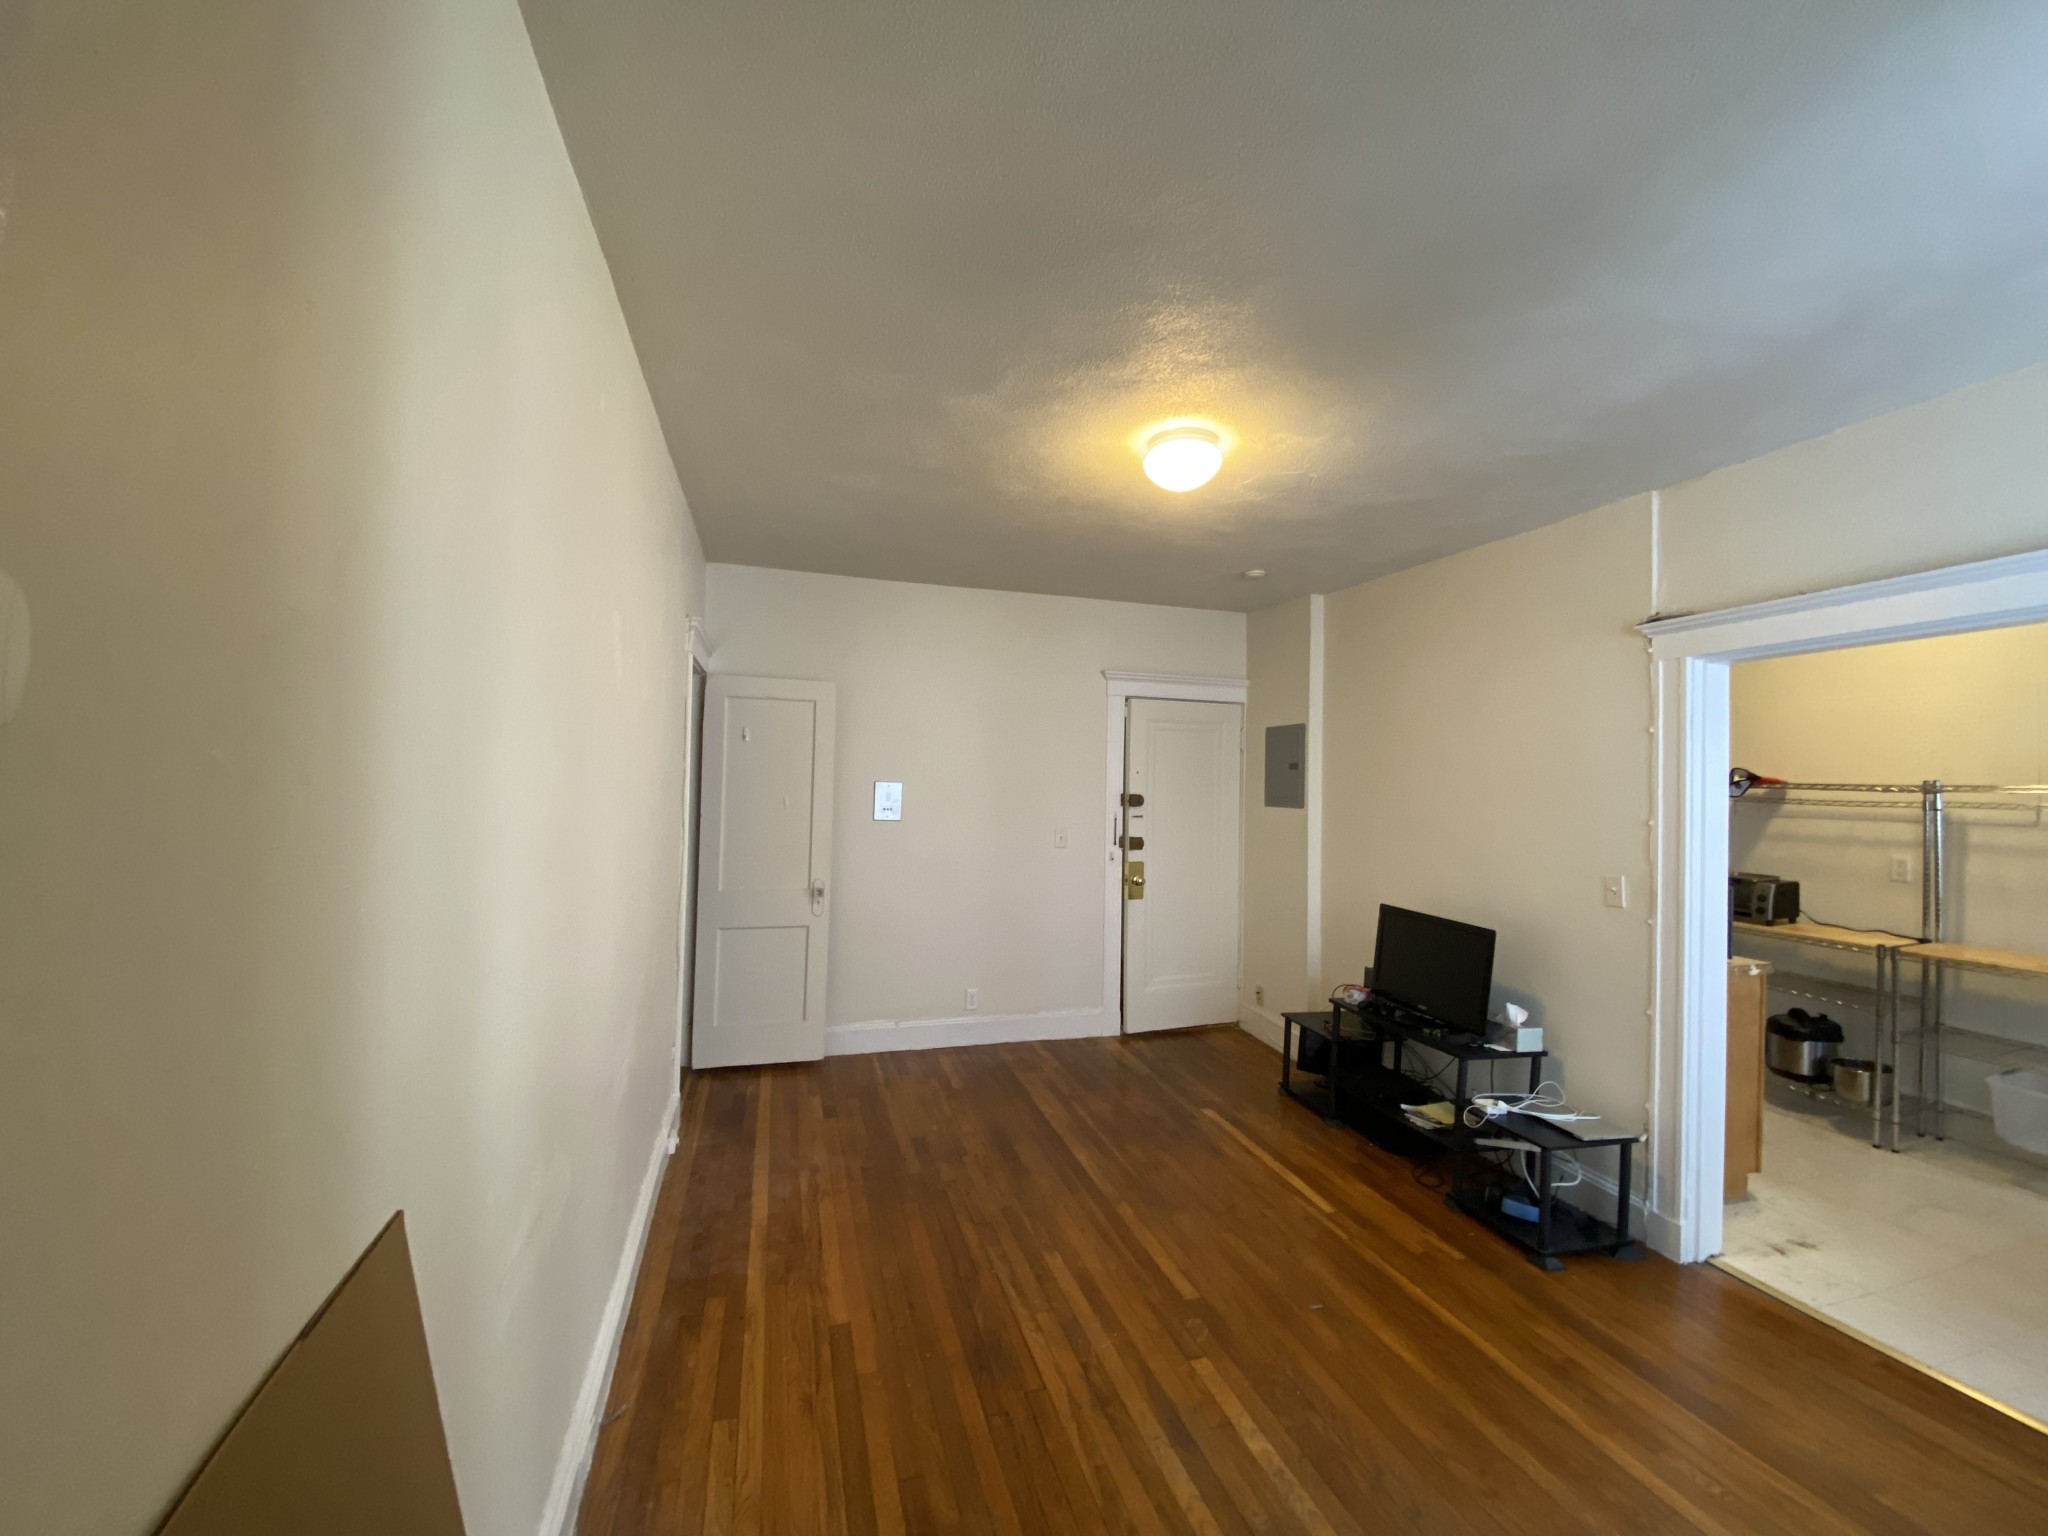 Photos of apartment on Gardner St.,Boston MA 02134